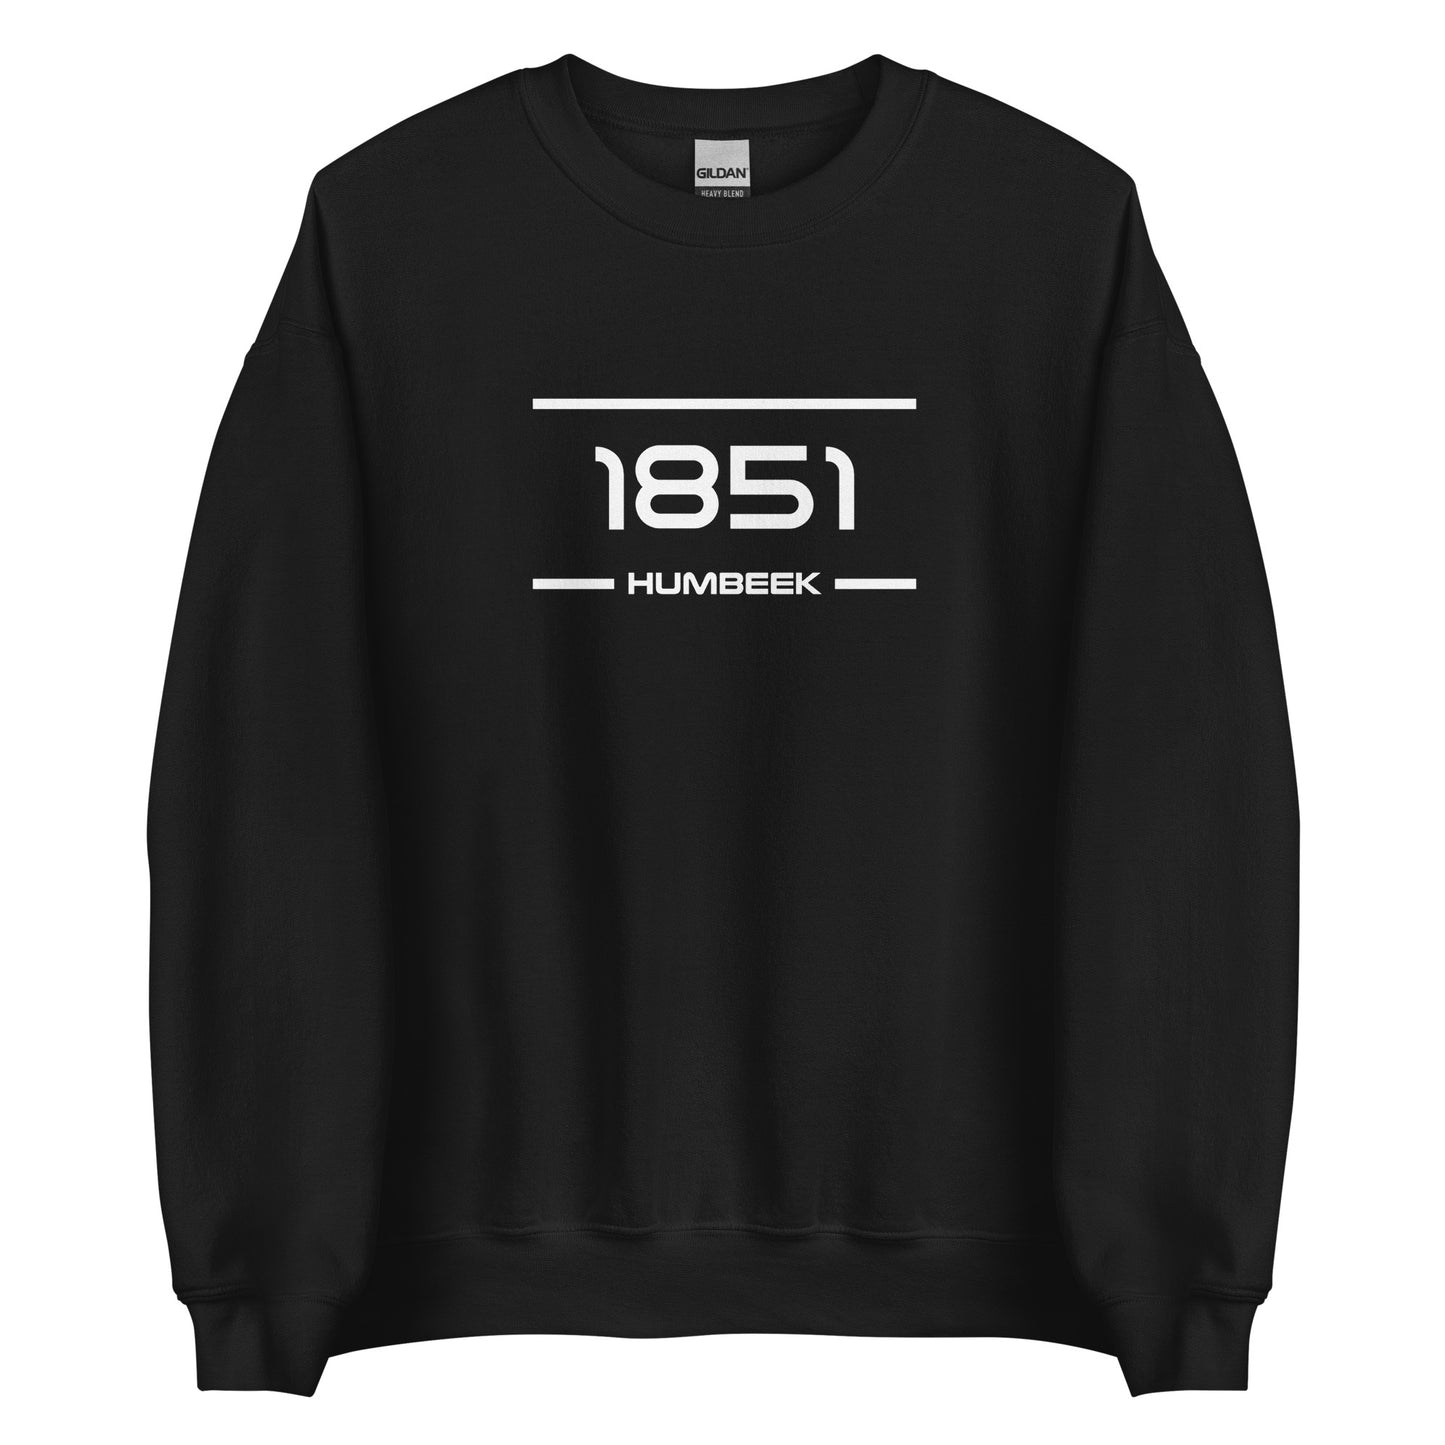 Sweater - 1851 - Humbeek (M/V)